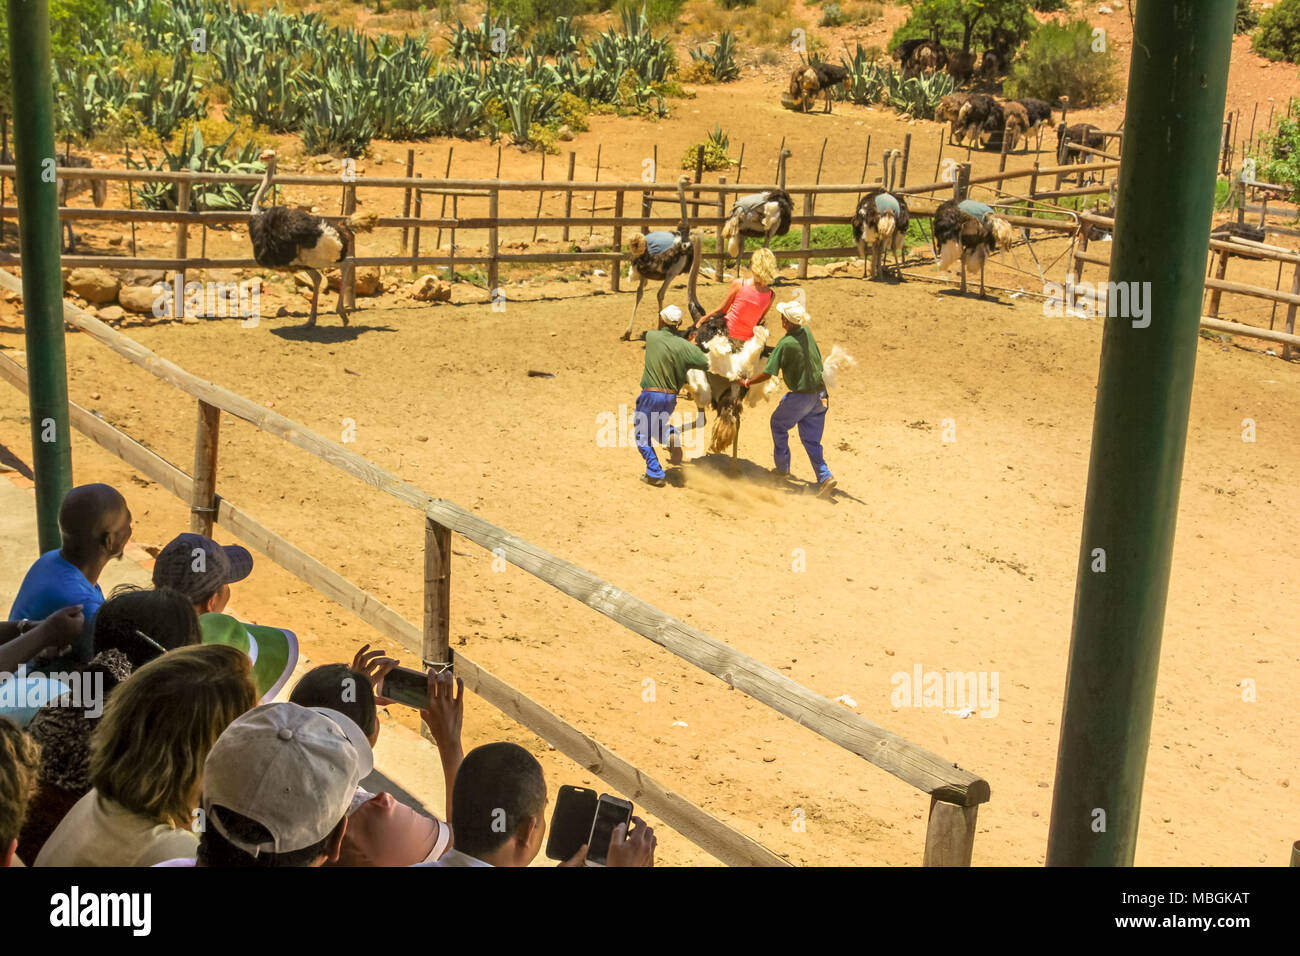 Oudtshoorn, Südafrika - Dec 29, 2013: Die Menschen während der strauße Tour an der Cango Ostrich Show Farm mit der letzten Demonstration, bei dem ein Freiwilliger Frau reitet ein Strauß. Touristenattraktion in Oudtshoorn. Stockfoto